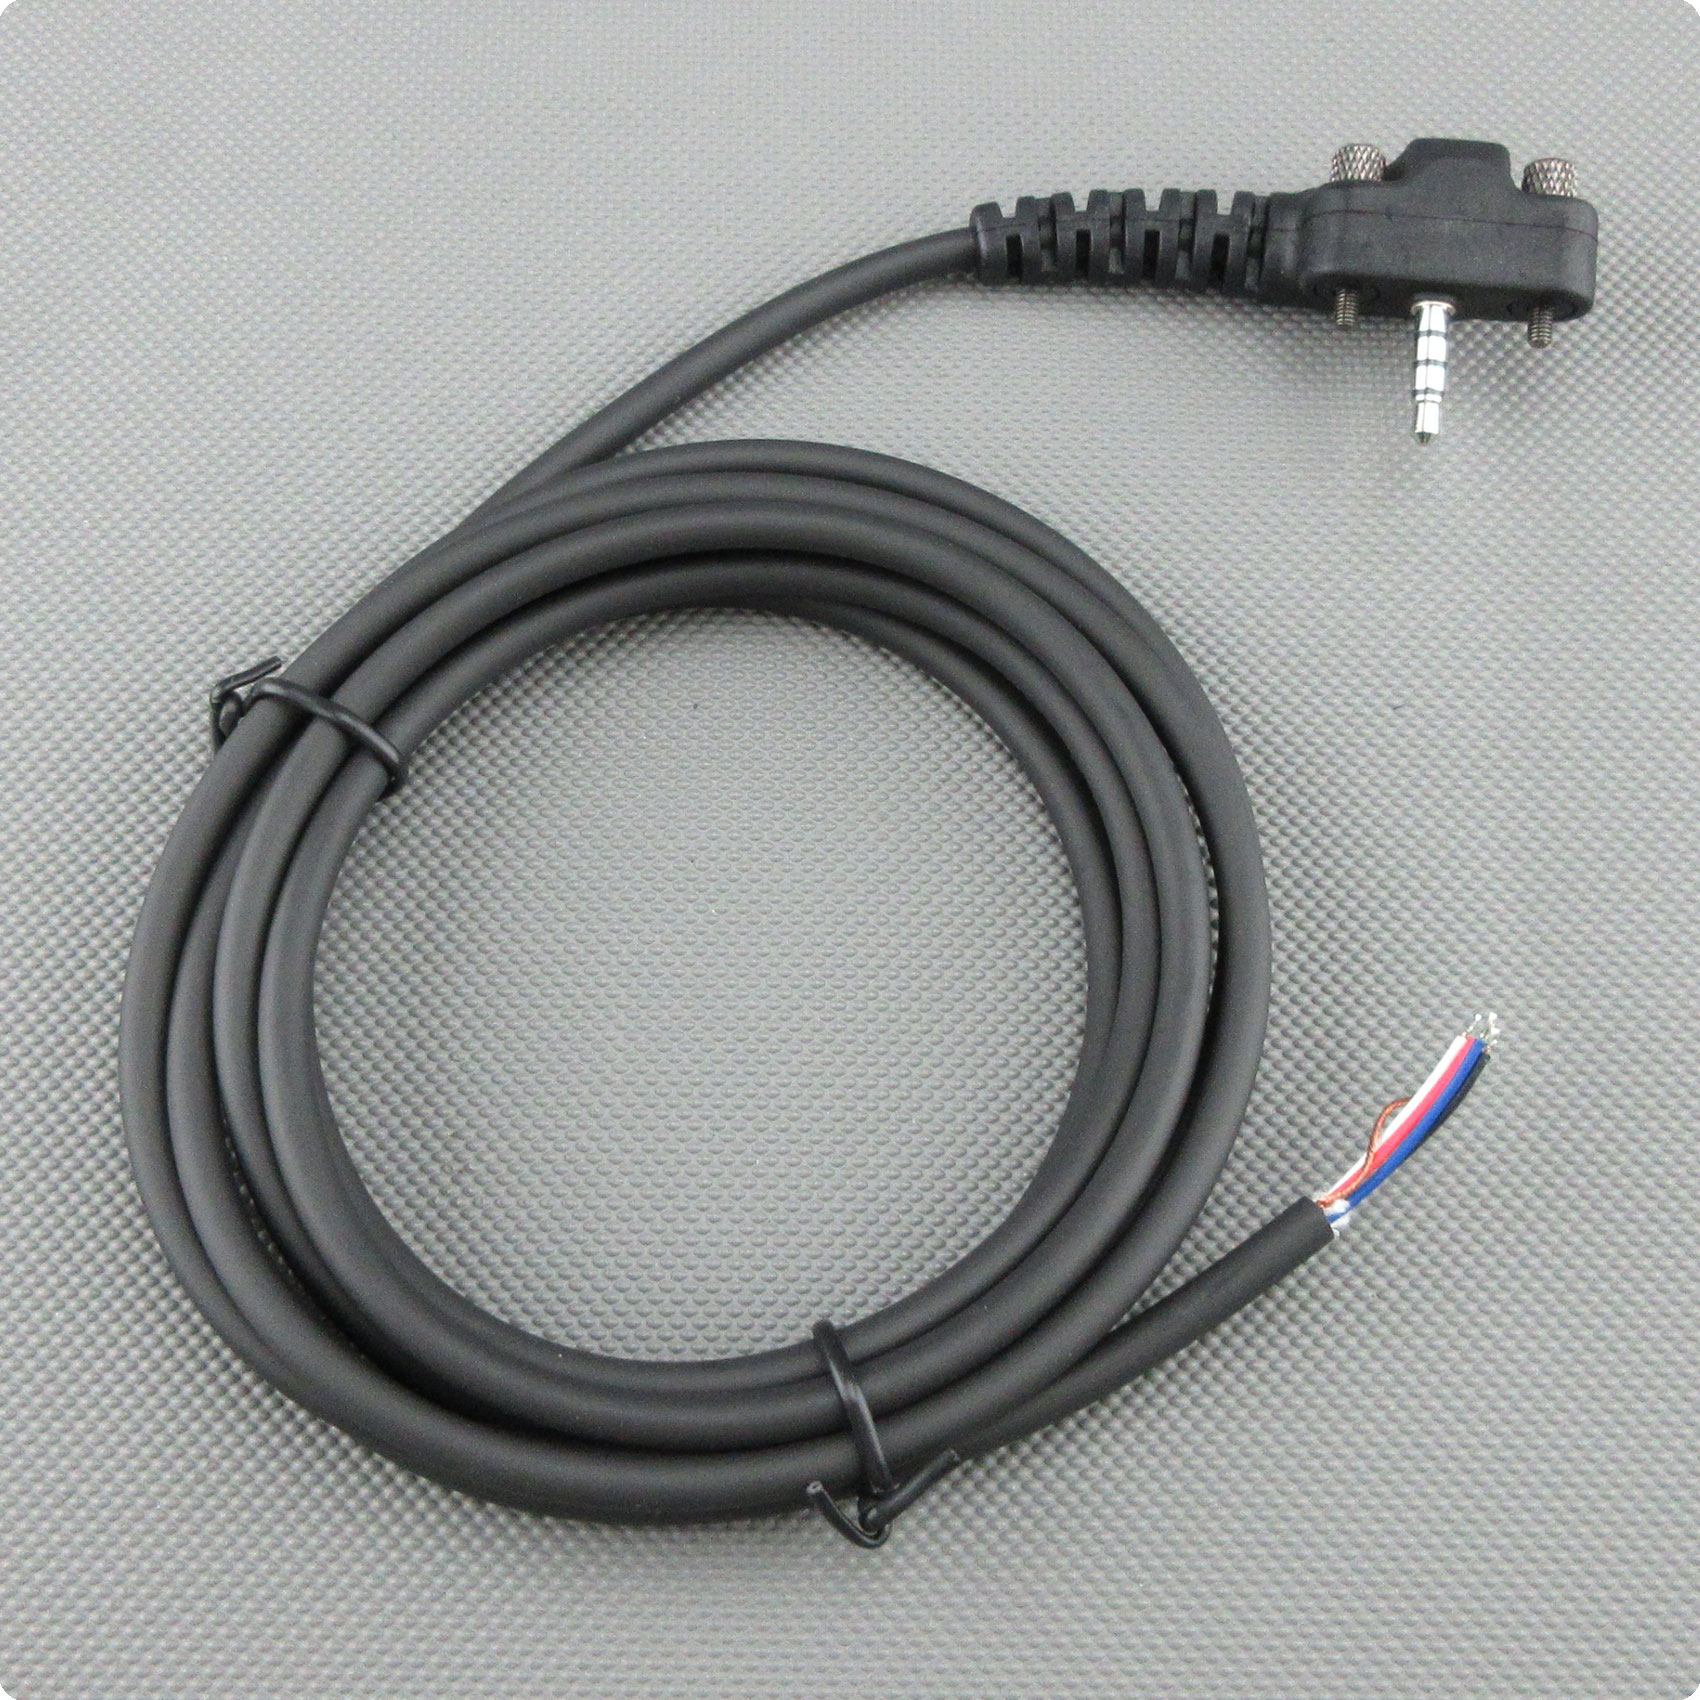 Cable de 1 pieza con clavija compatible con Yaesu / Vertex